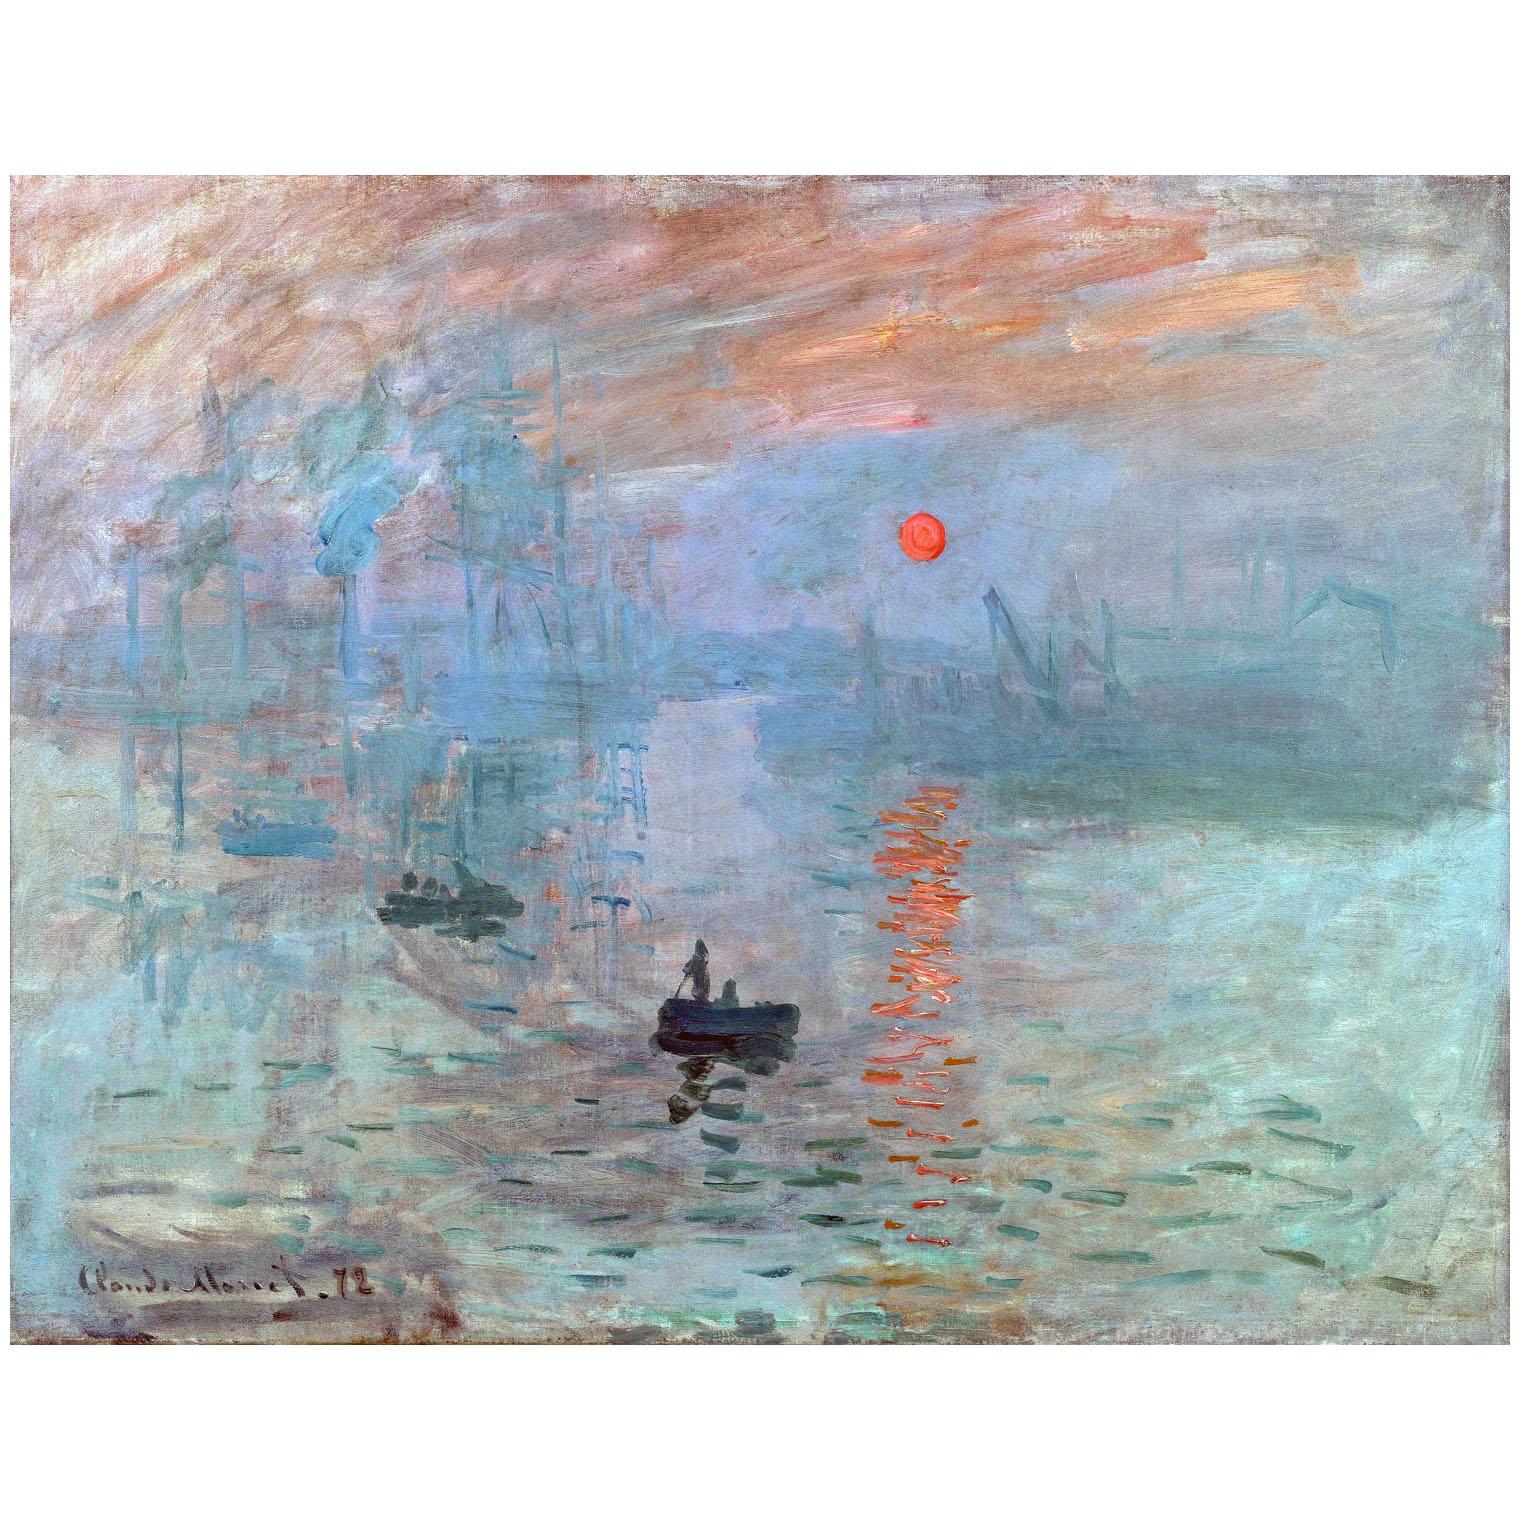 Claude Monet. Impression, soleil levant. 1872. Musee Marmottan Monet Paris